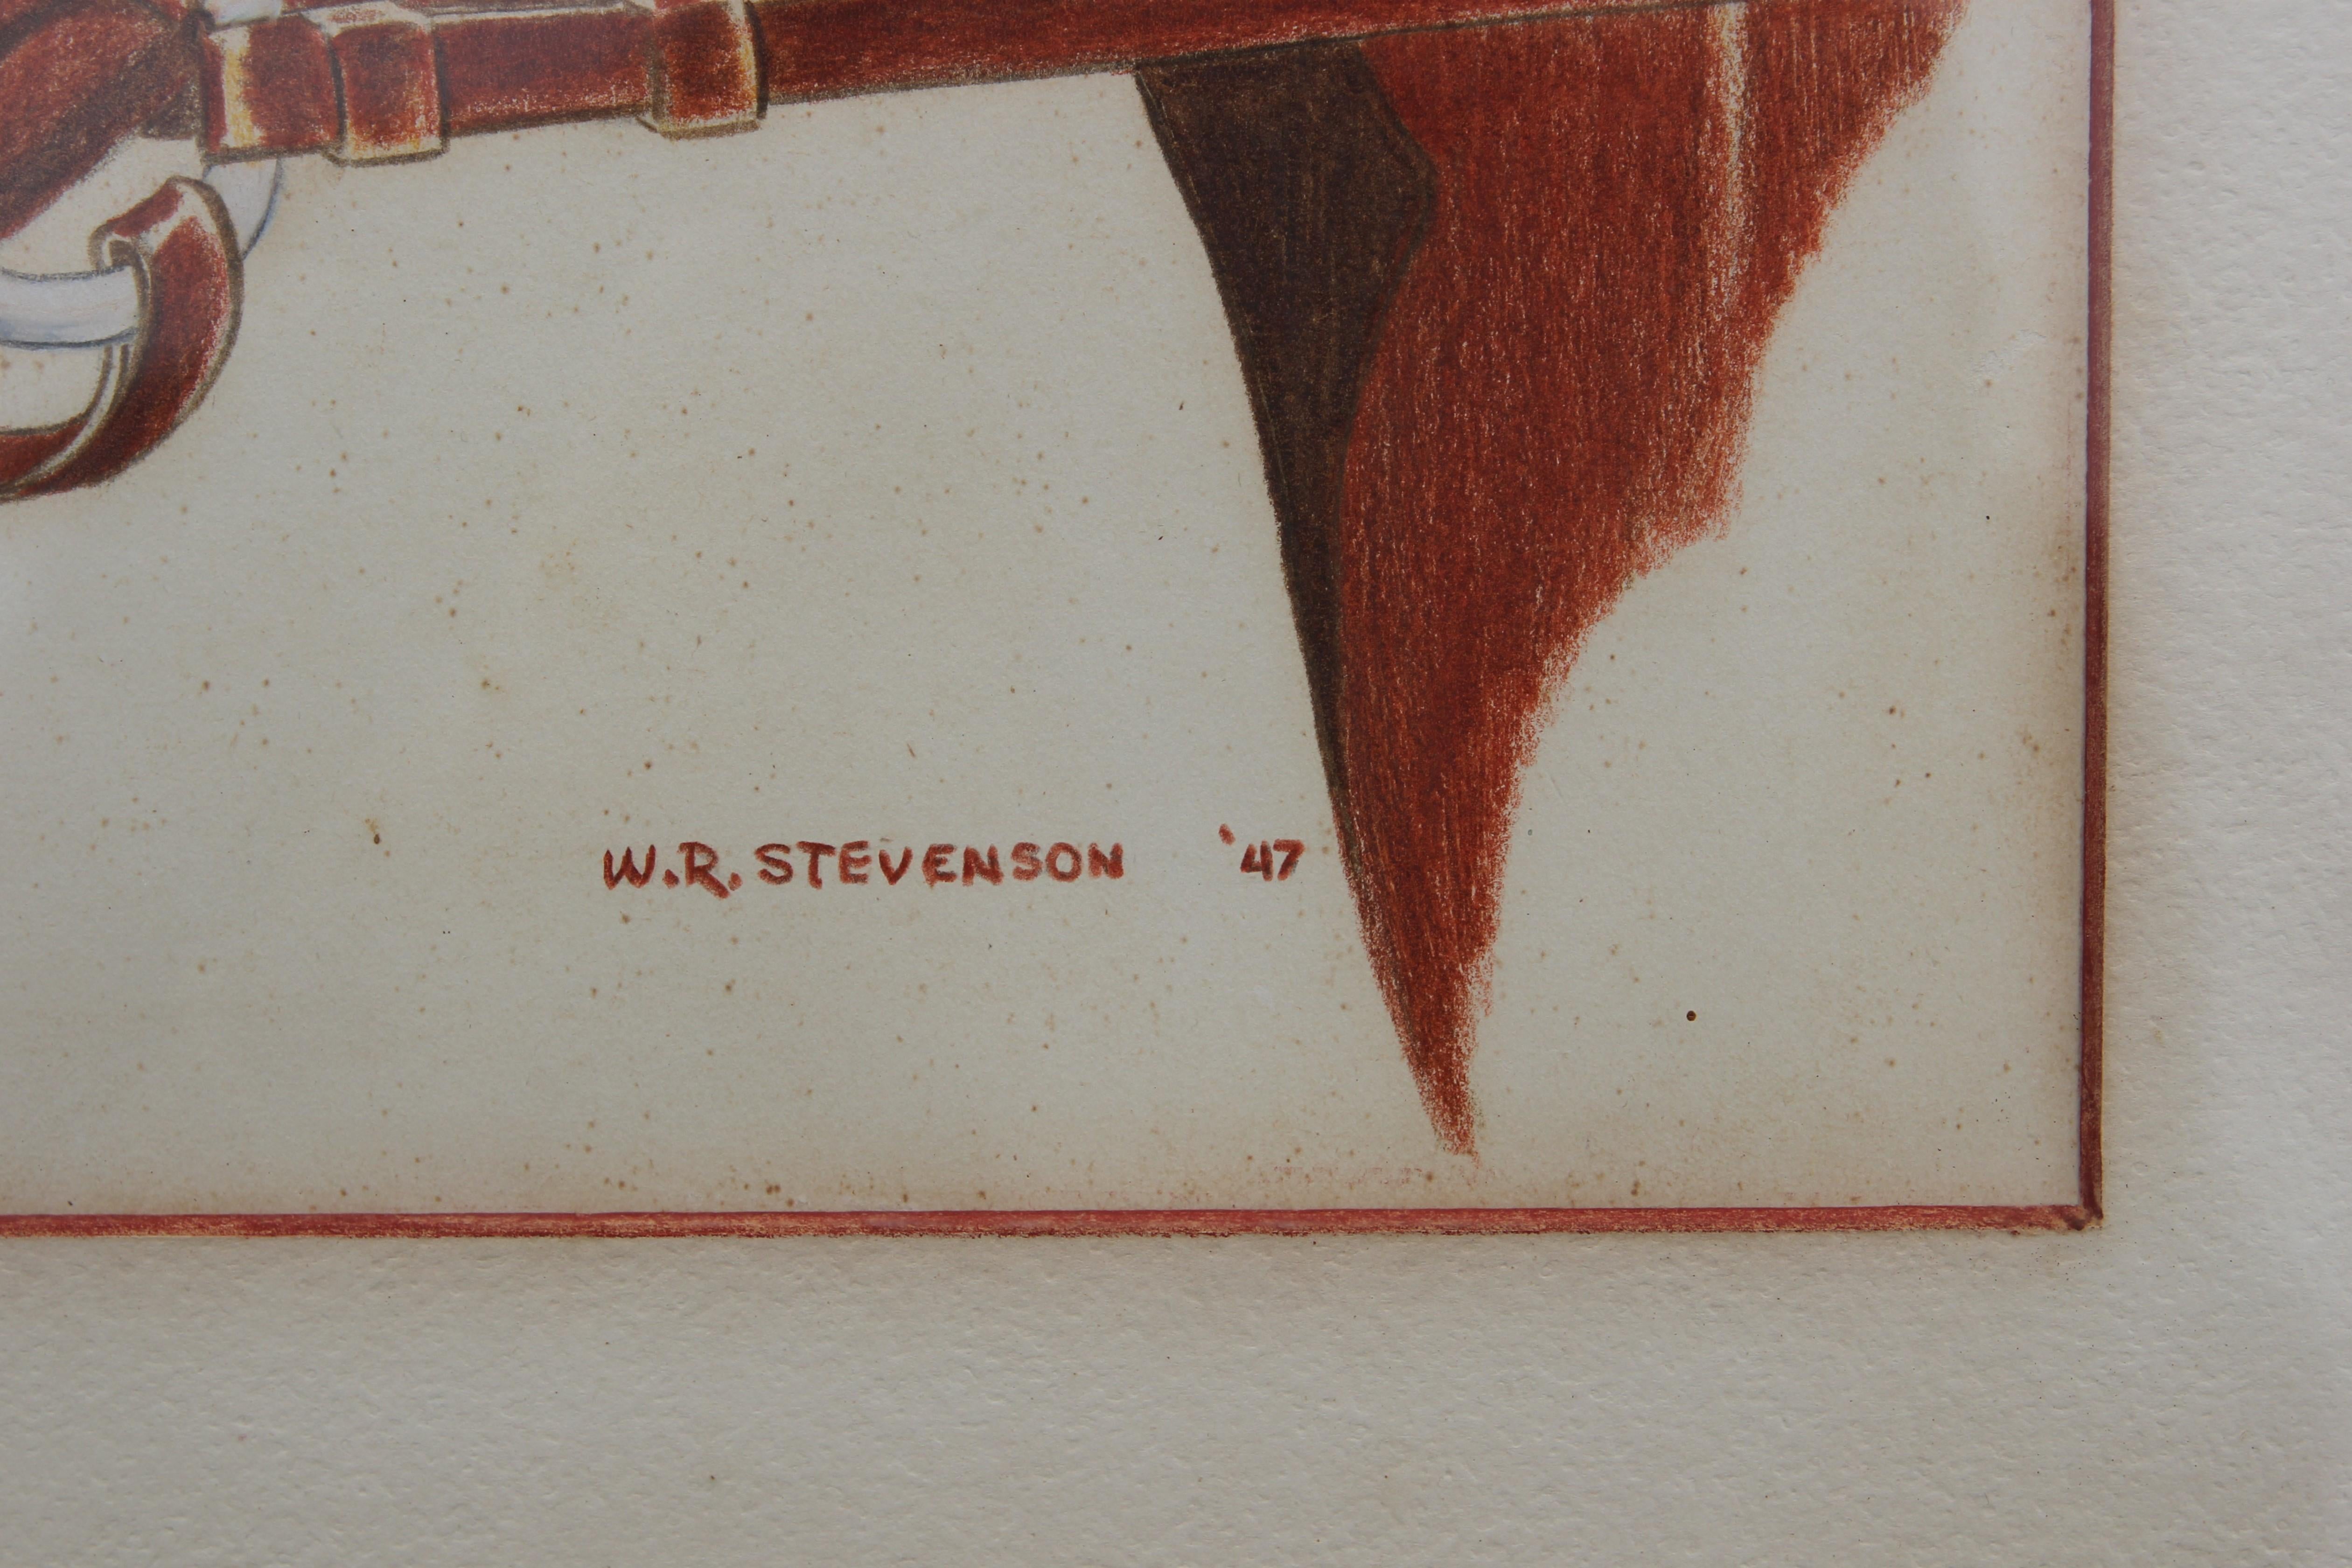 Naturalistisches Porträt eines Pferdes mit Farbstift auf Papier. Die Zeichnung ist in einem Holzrahmen mit cremefarbener Zierleiste gerahmt. Das Werk ist vom Künstler in der rechten unteren Ecke signiert und datiert.

Abmessungen ohne Rahmen: H 13,5